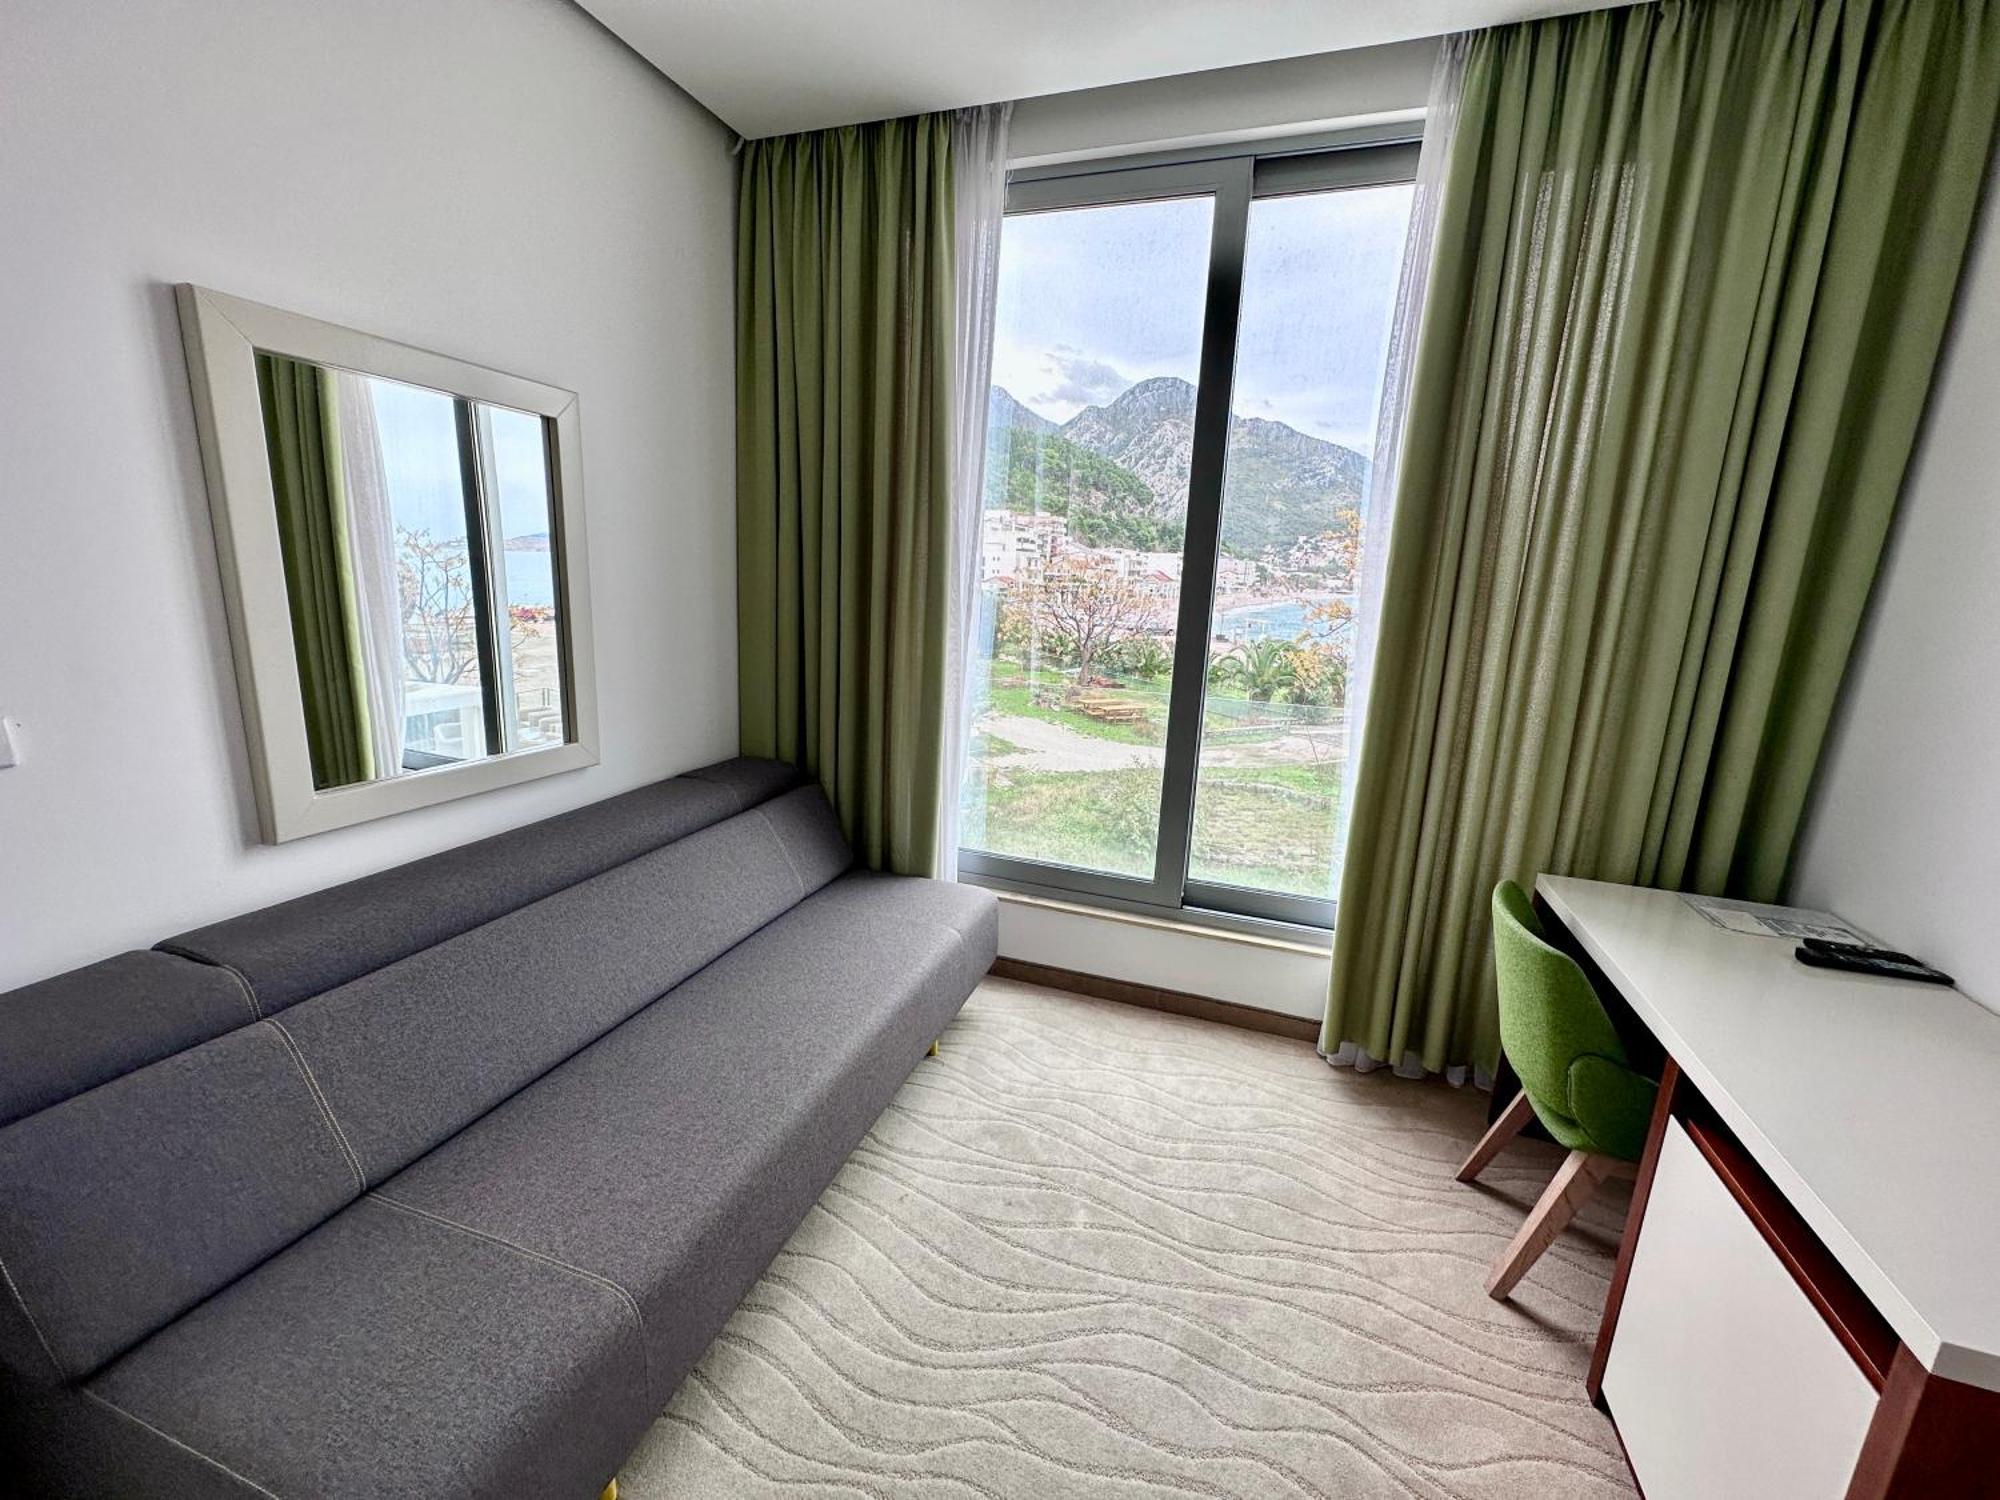 Hotel Porto Sole Sutomore Room photo